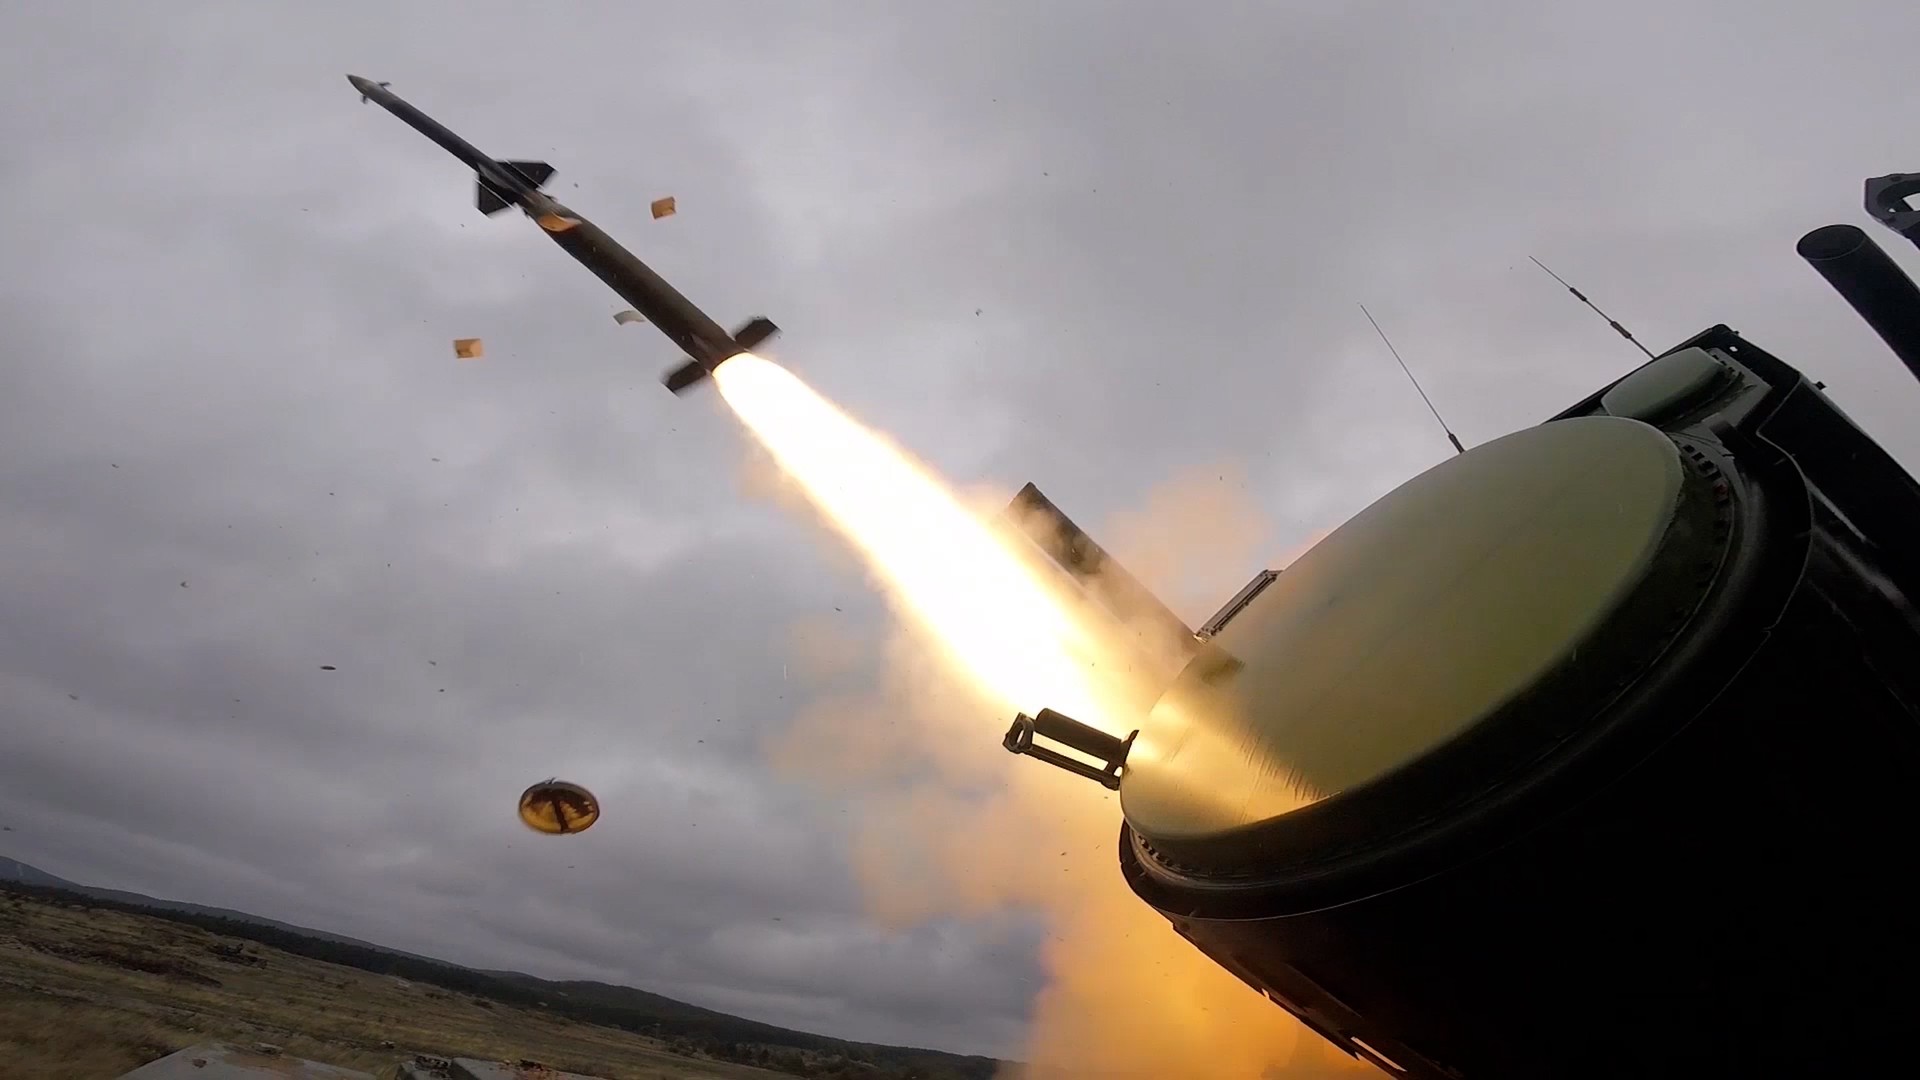 Минобороны: Средства ПВО уничтожили малоразмерный воздушный шар над Подмосковьем